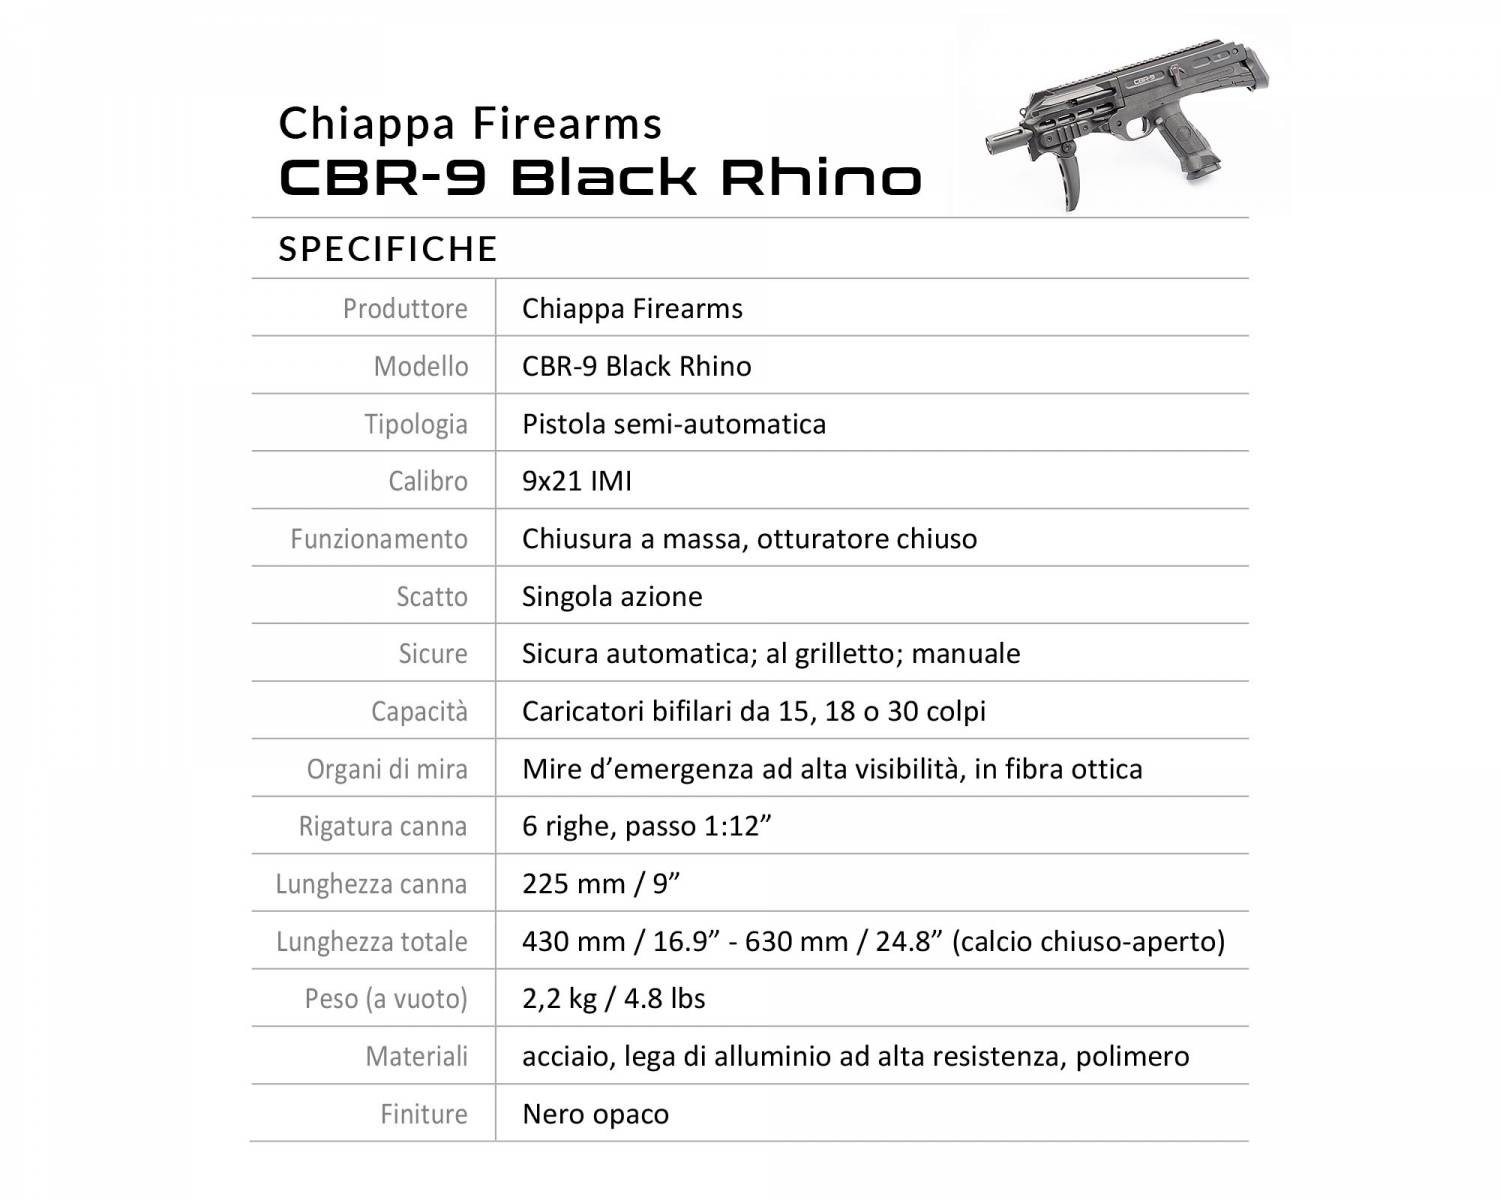 Specifiche della pistola Chiappa Firearms CBR-9 Black Rhino